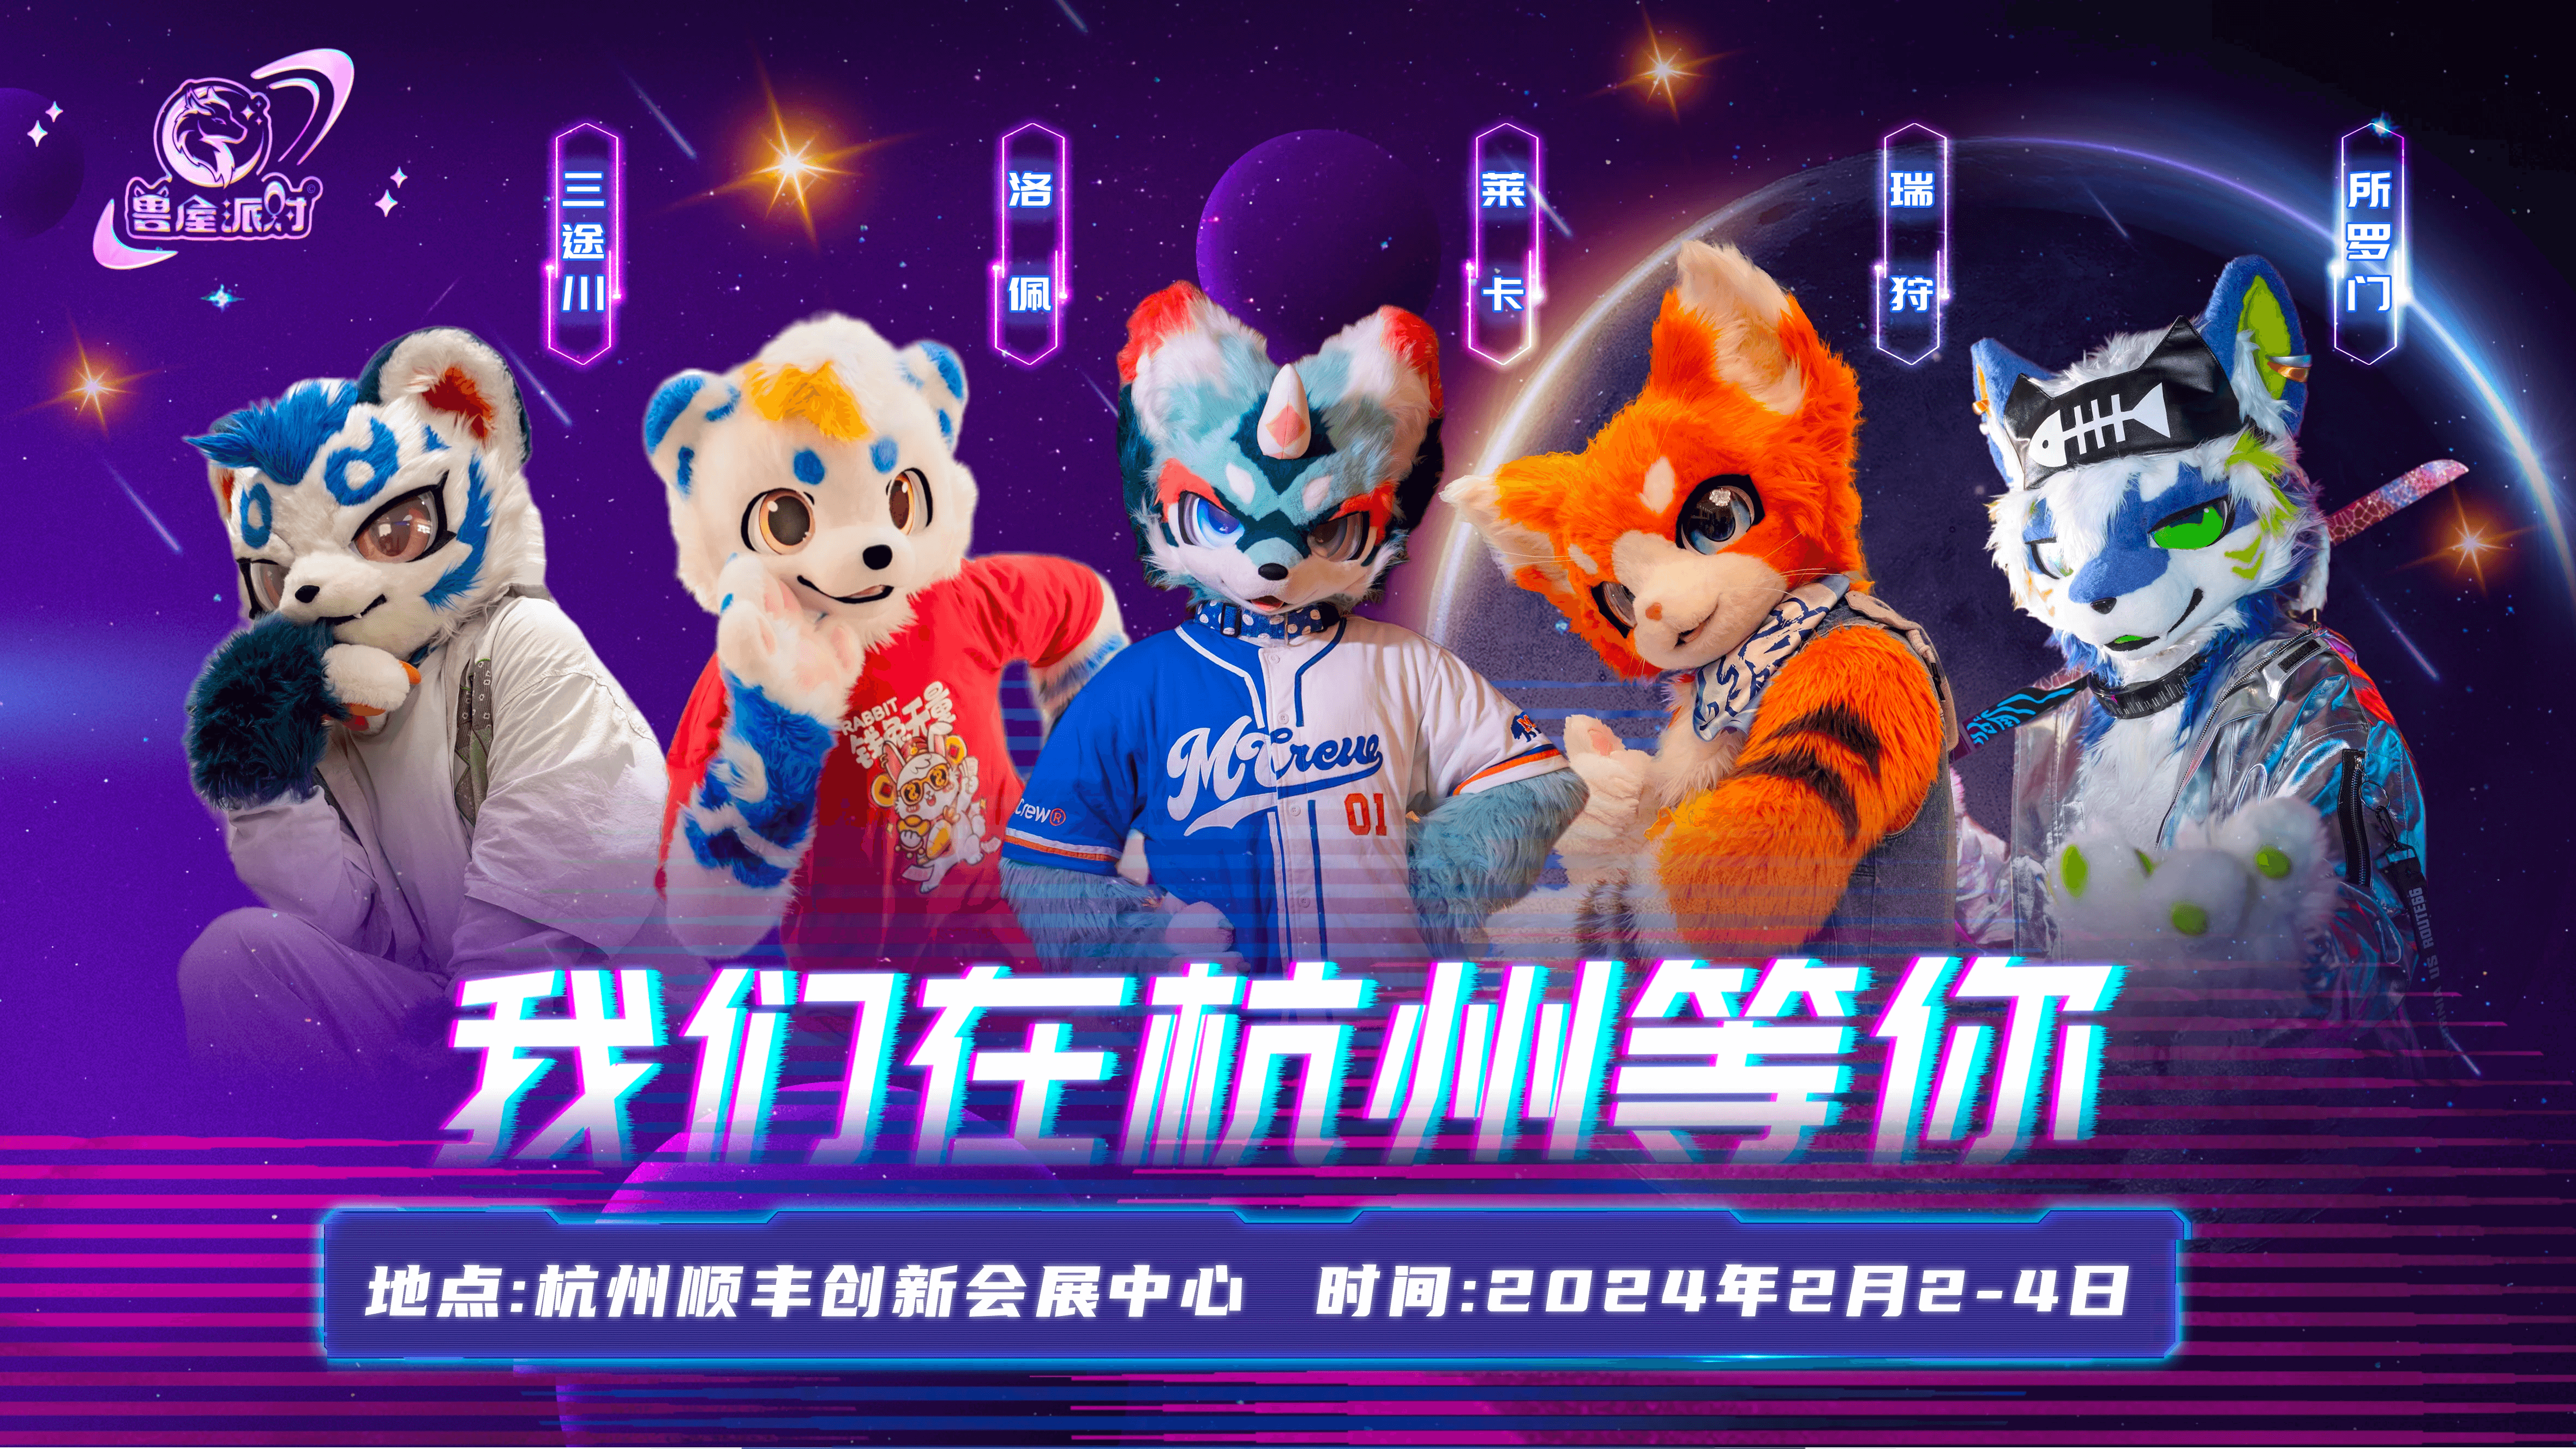 兽屋派对 · 杭州的活动封面